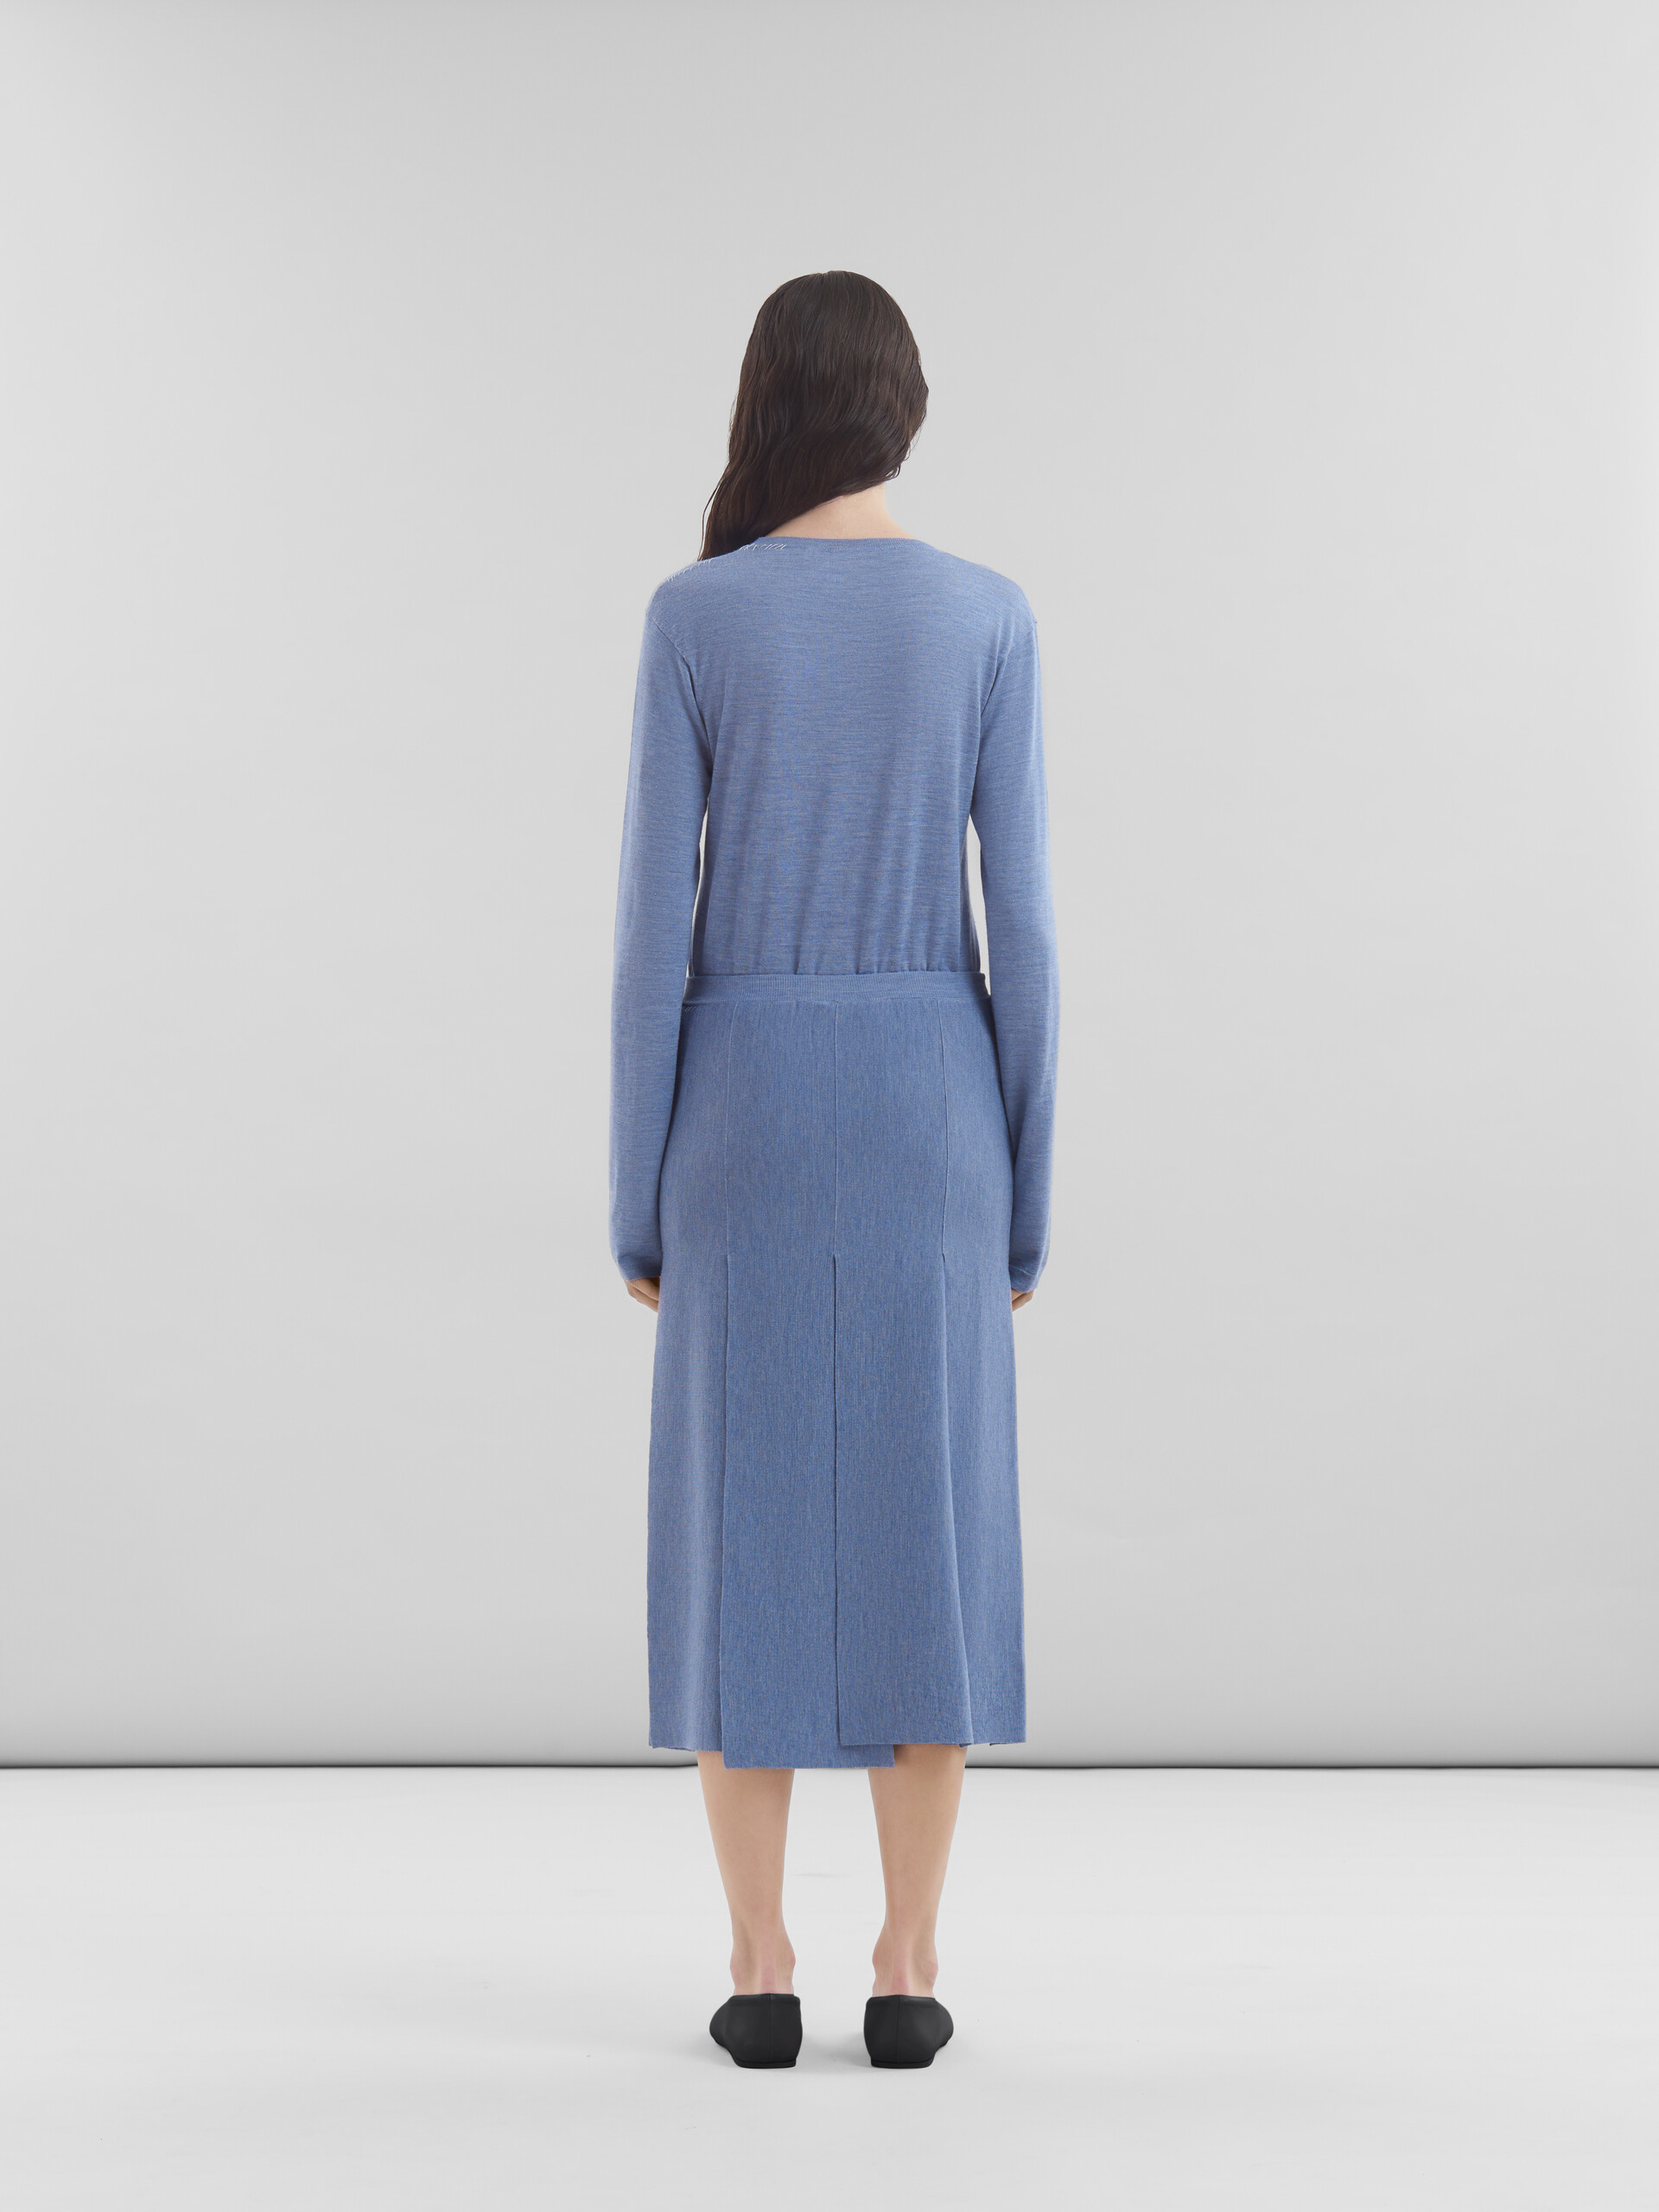 Falda azul de lana y seda con aberturas sin rematar - Faldas - Image 3